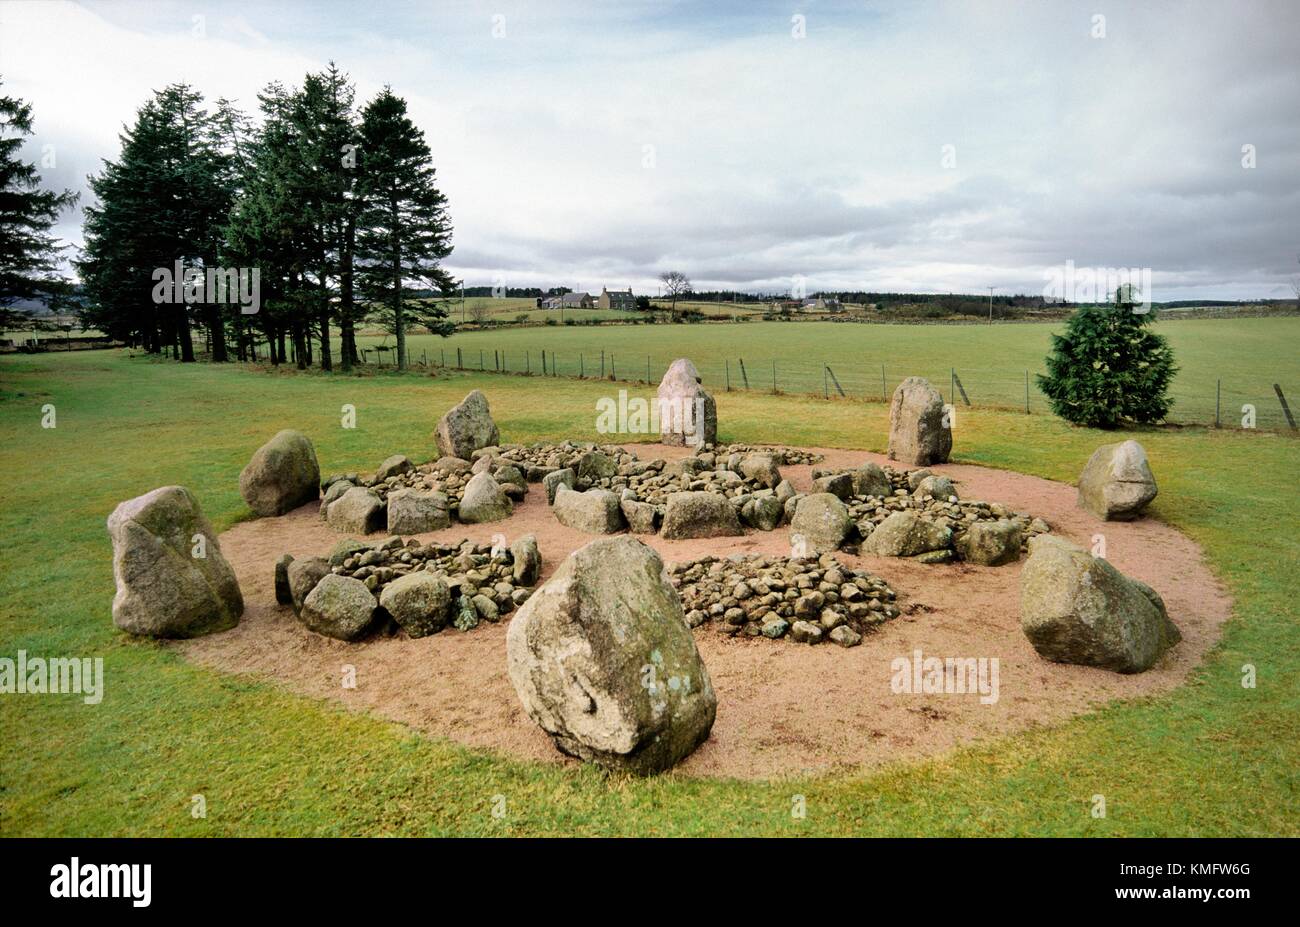 Preistorica Cullerlie stone circle racchiude otto sepolture ad incinerazione cairns. Età del Bronzo. Vicino Garlogie, Aberdeen Scotland, Regno Unito Foto Stock